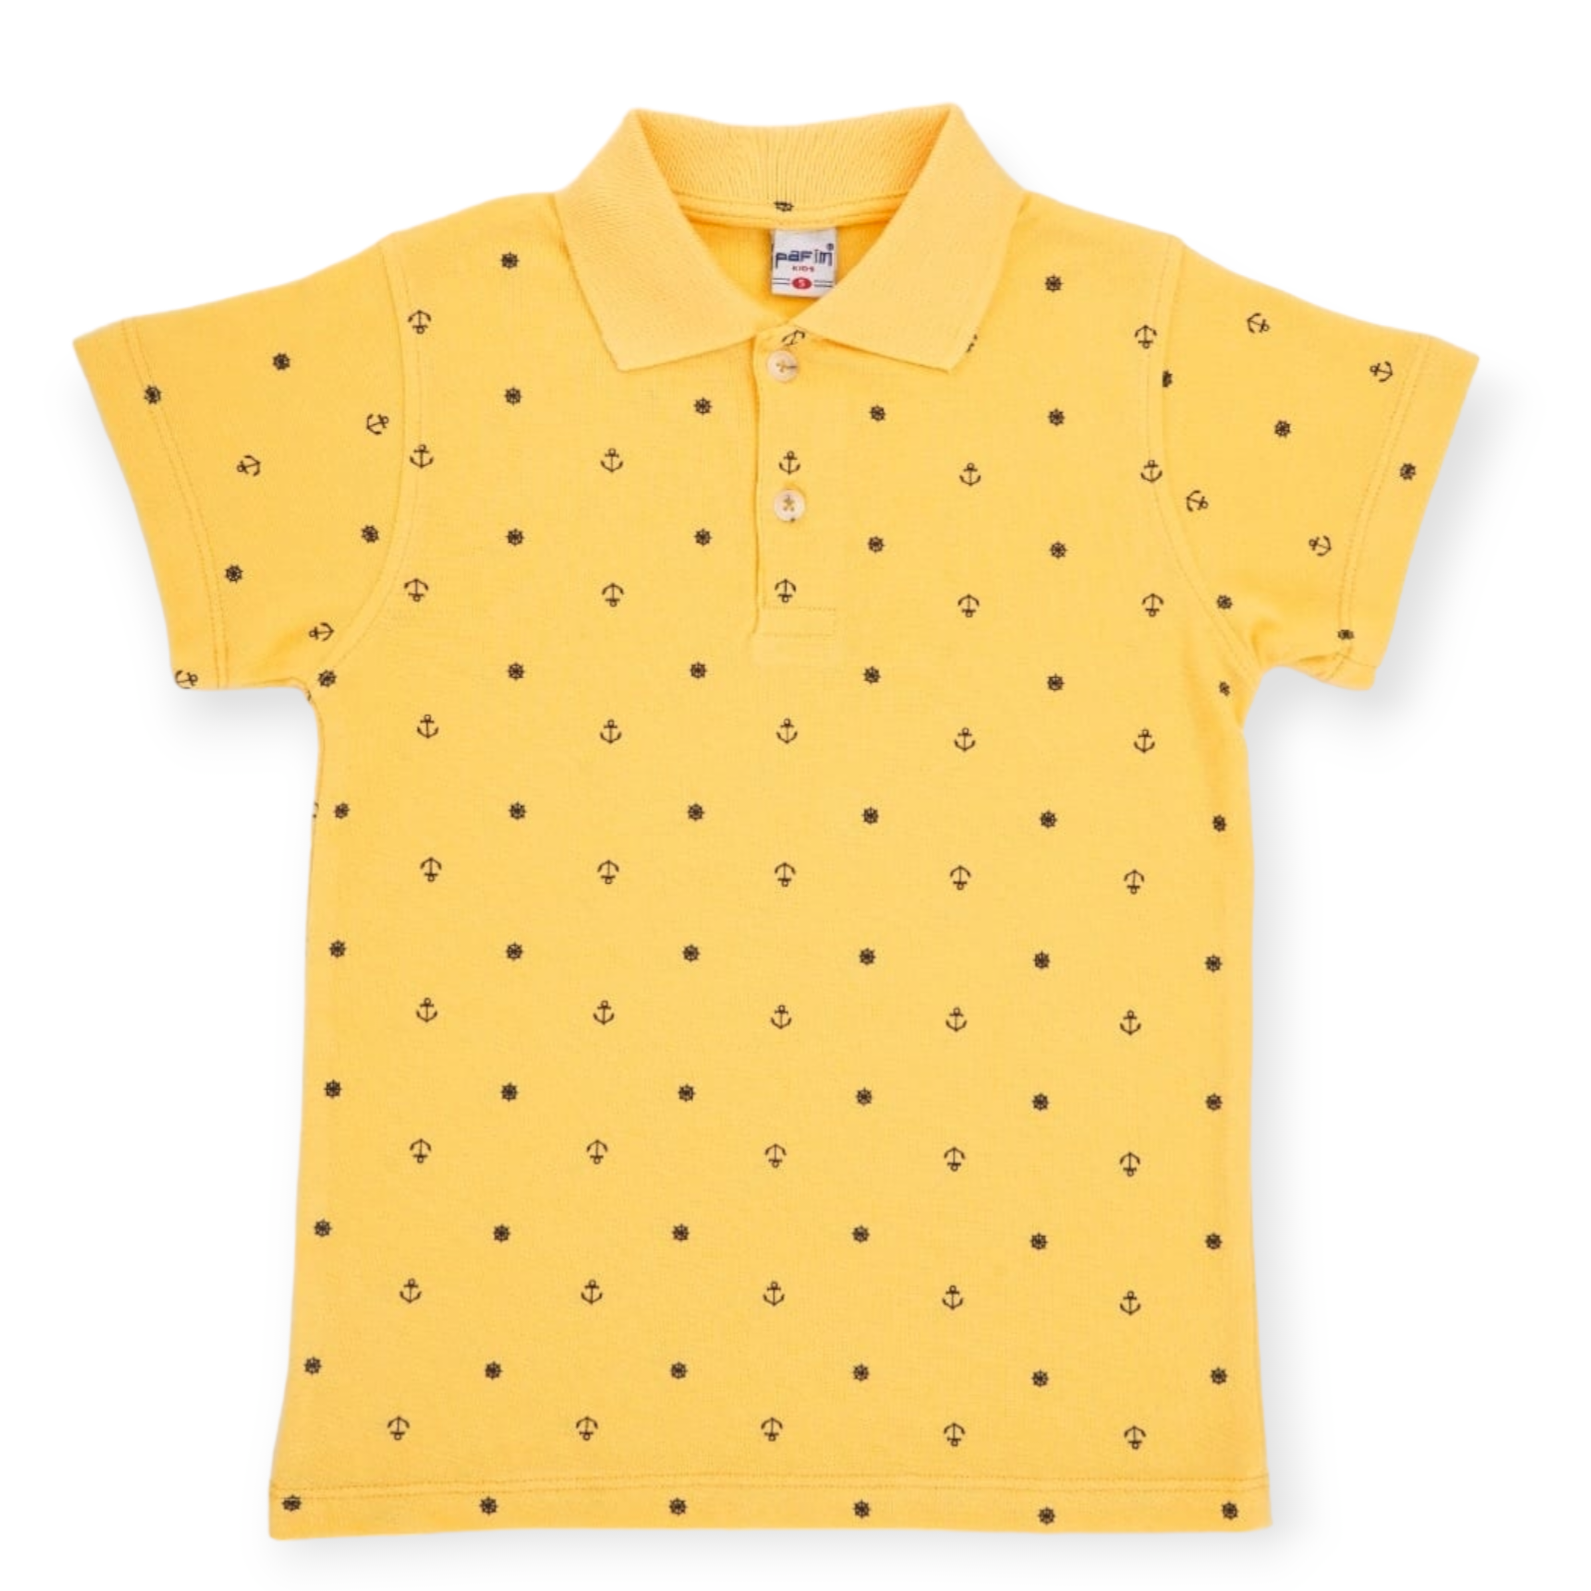 The Anchor Boys Polo Shirt